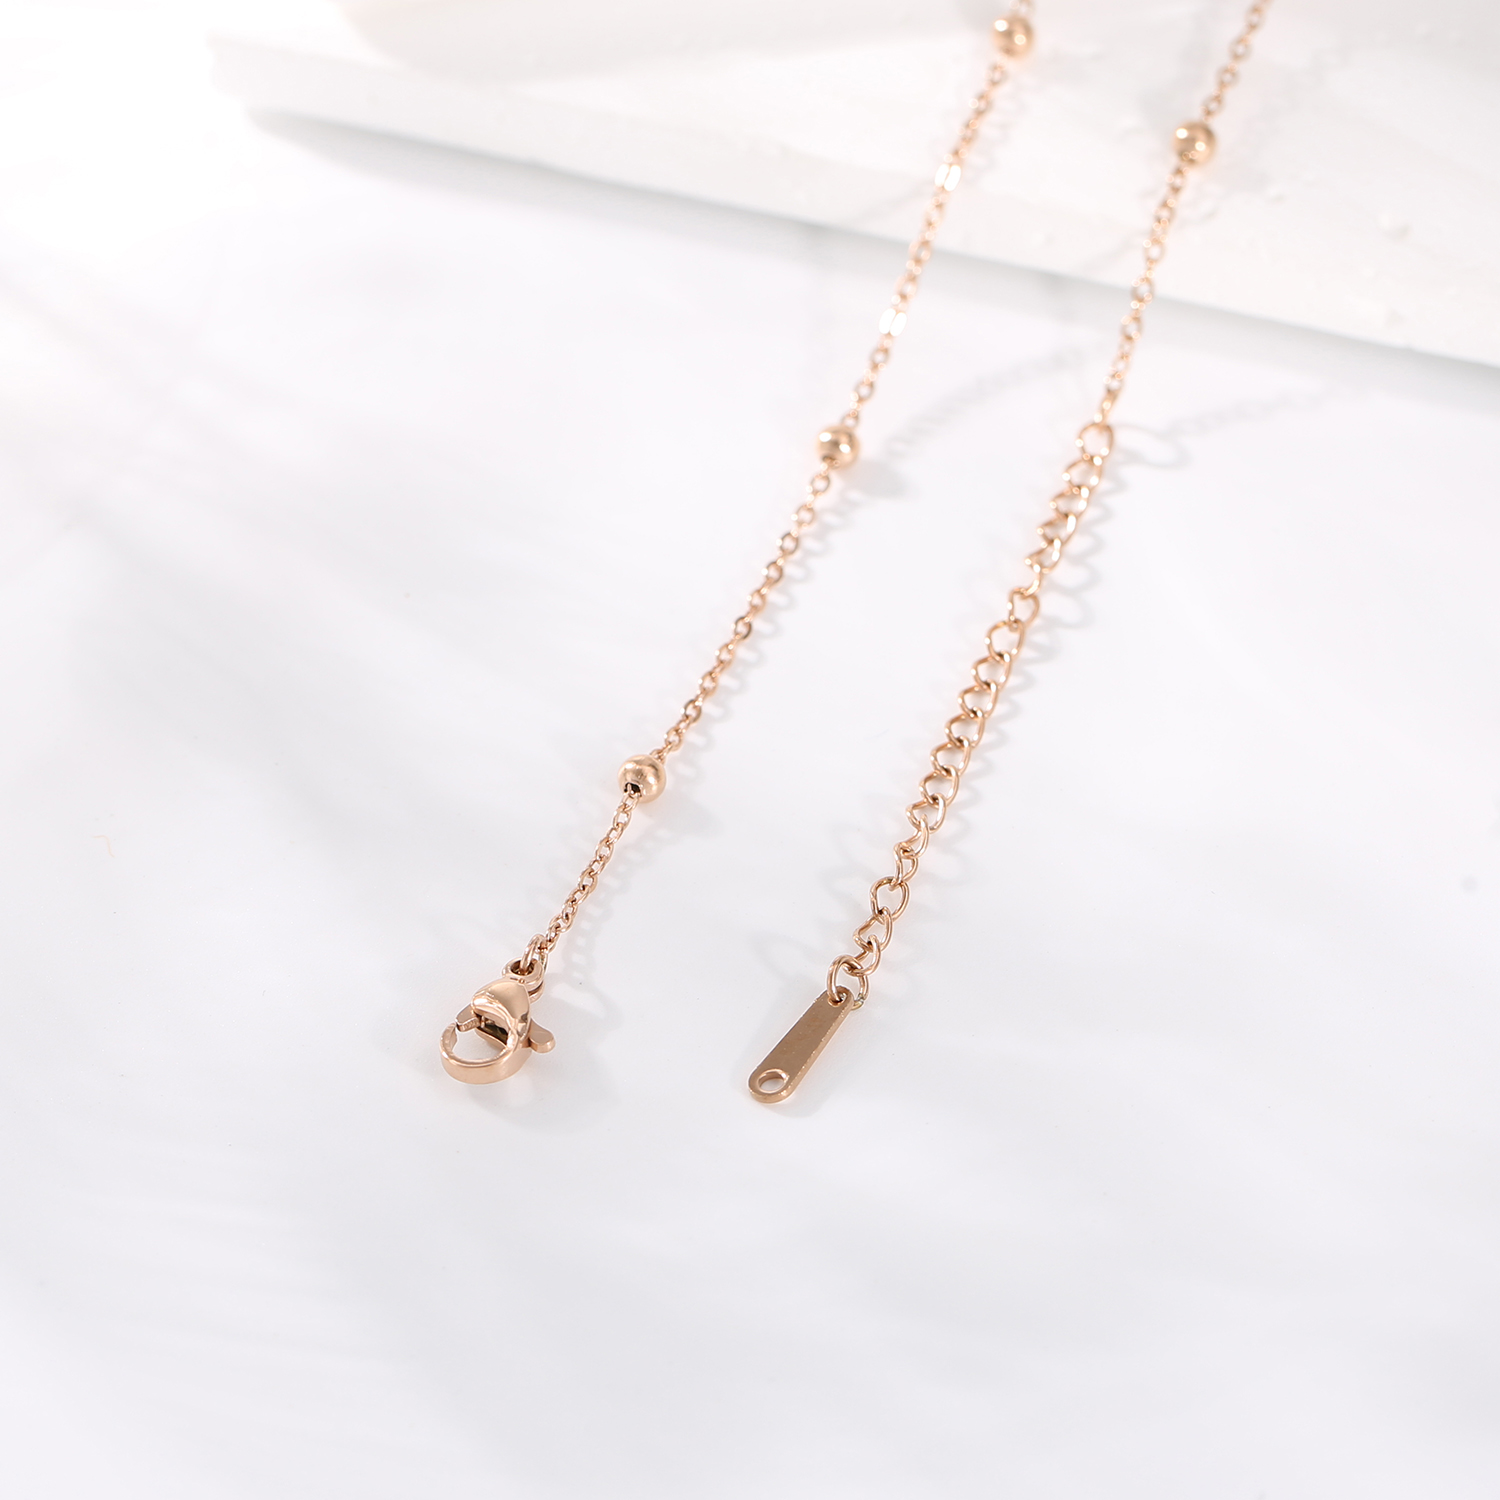 Benutzerdefinierte 18K vergoldete Edelstahl-Halskette, zierliche Halskette, Emaille-Schmetterlings-Halskette für Frauen und Mädchen